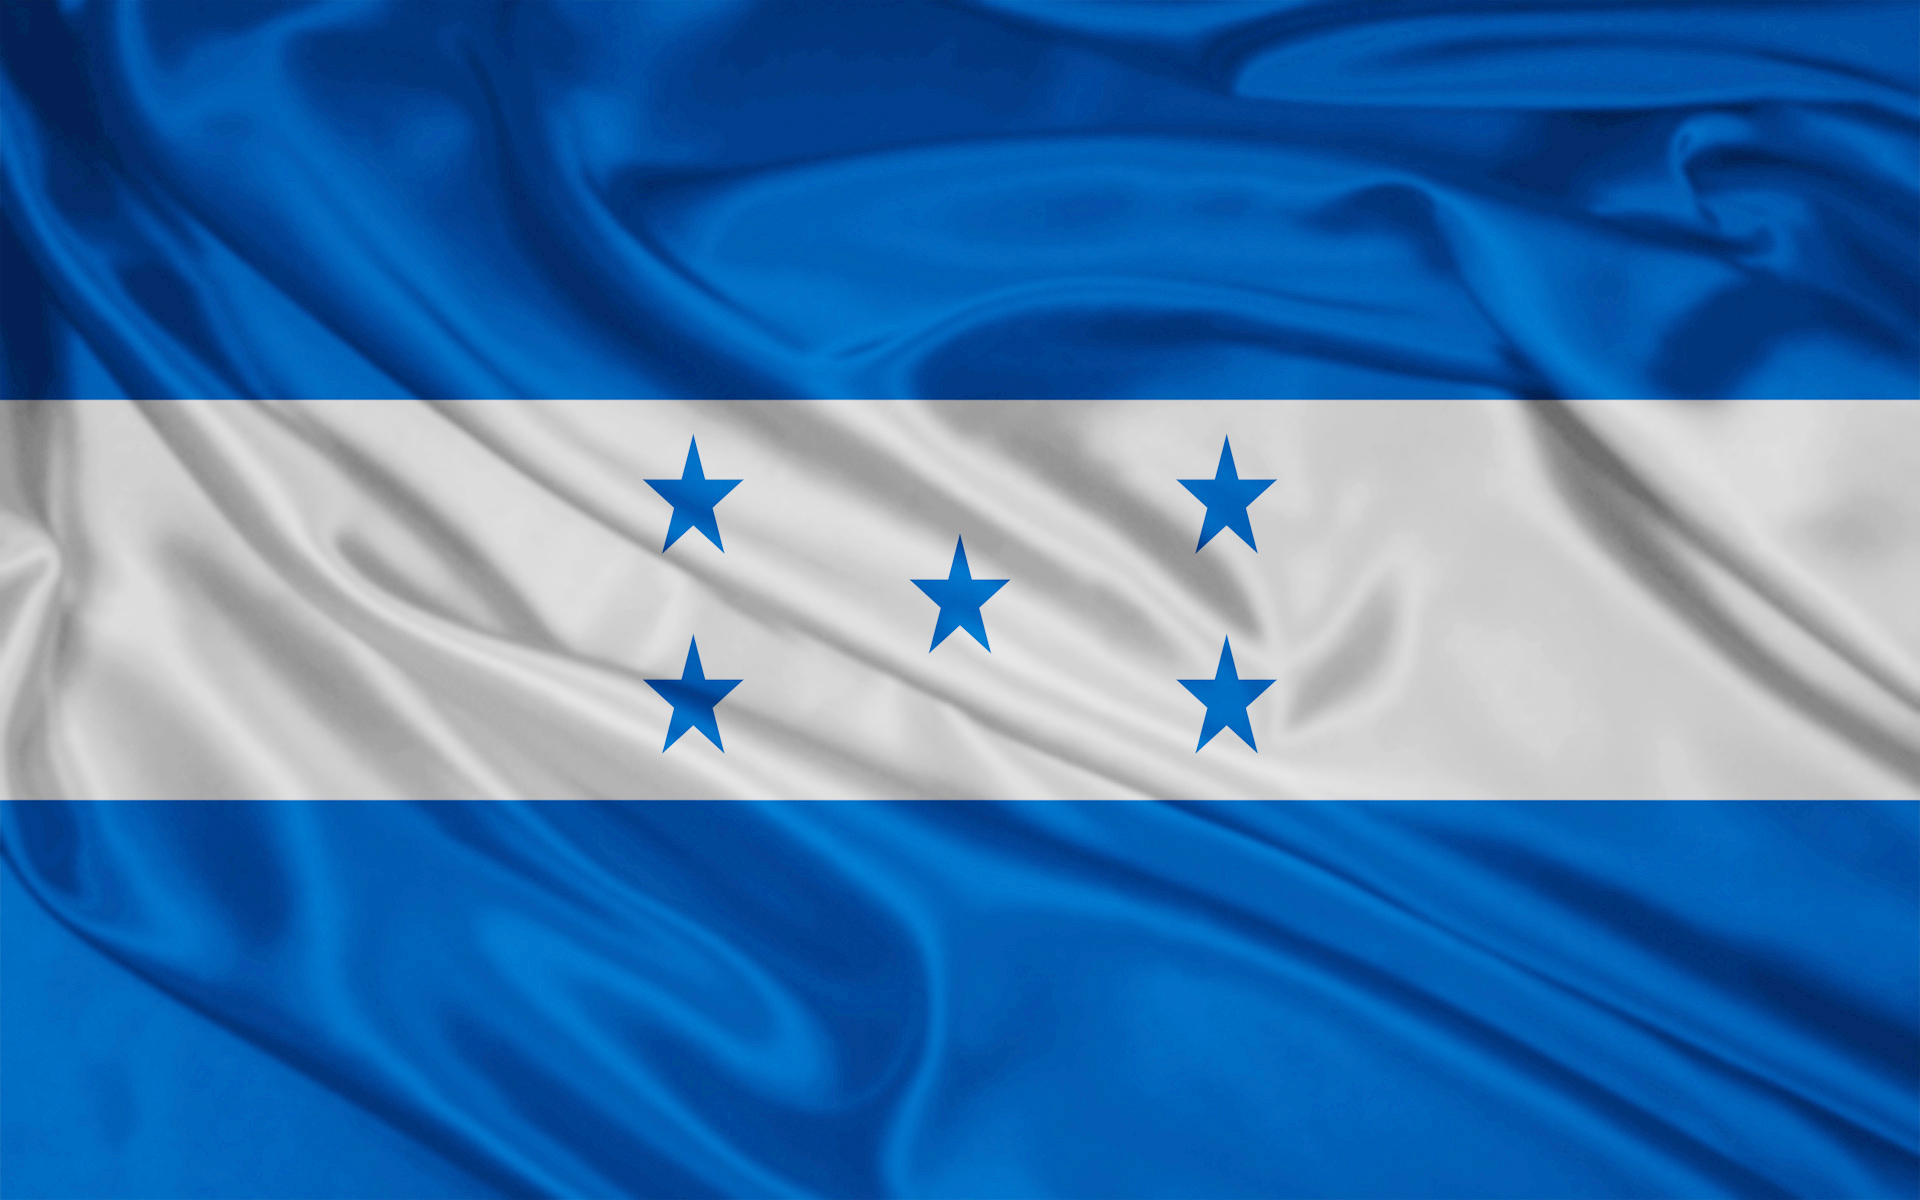 Honduras Flag Wallpaper Stock Photos